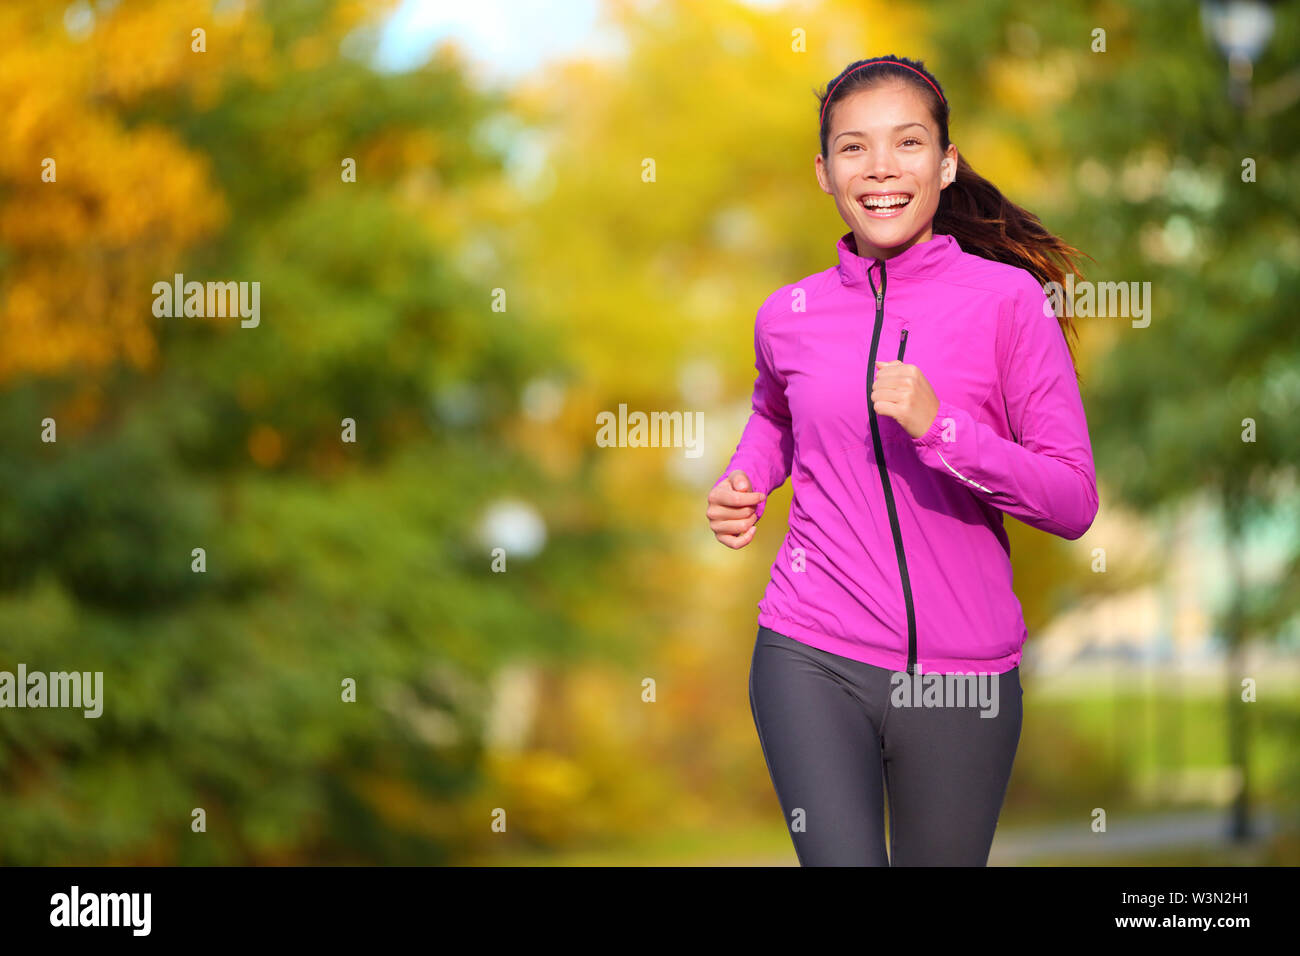 Weibliche Jogger. Passen junge asiatische Frau Joggen im Park lächelte glücklich und genießen Sie einen gesunden Lebensstil im Freien. Fitness runner Mädchen im Herbst Wald mit Herbst Laub. Gemischte Rasse asiatischen Kaukasischen. Stockfoto